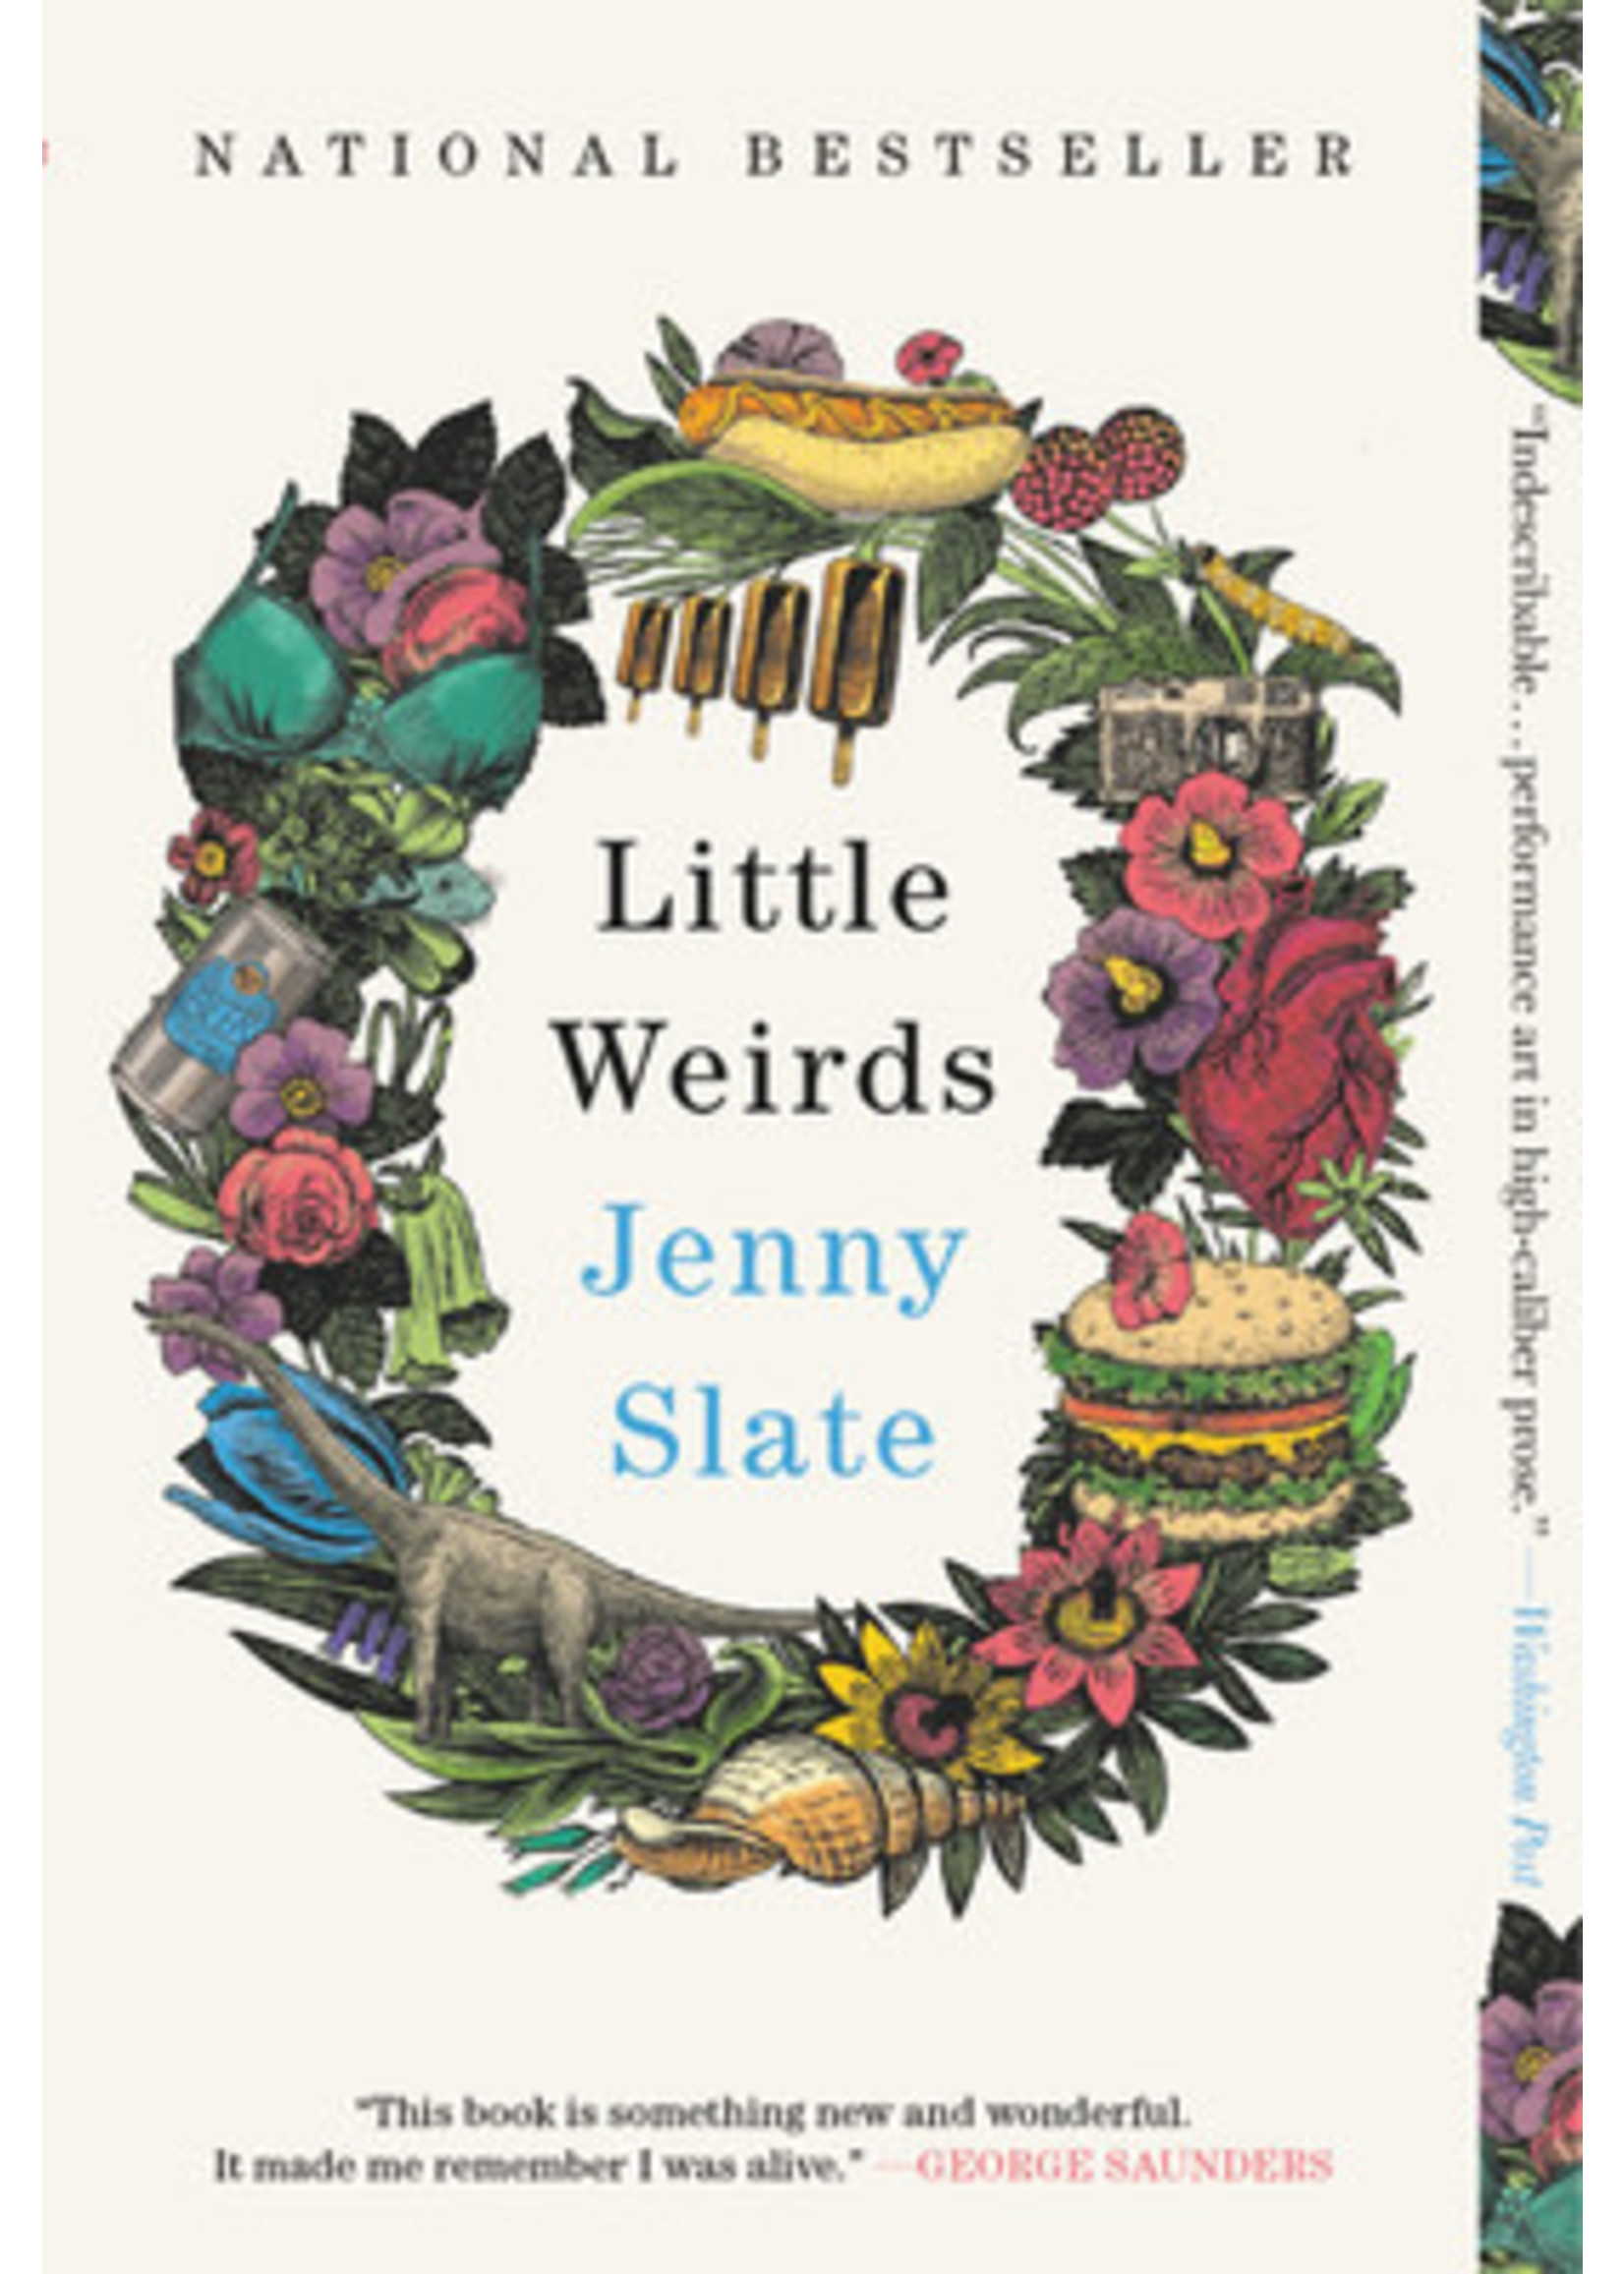 Little Weirds by Jenny Slate